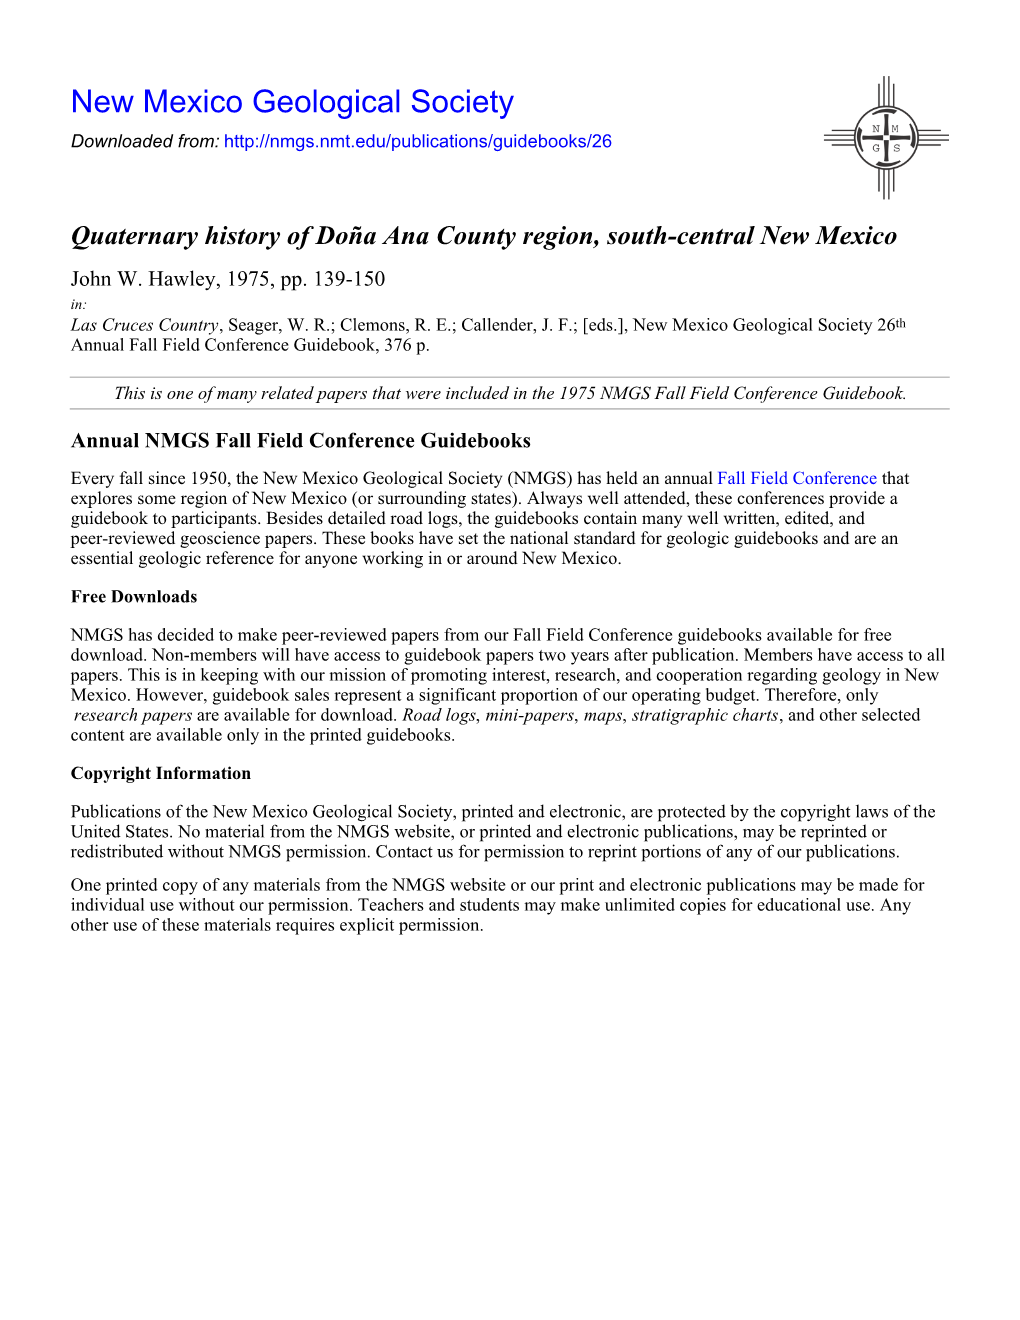 Quaternary History of Doña Ana County Region, South-Central New Mexico John W